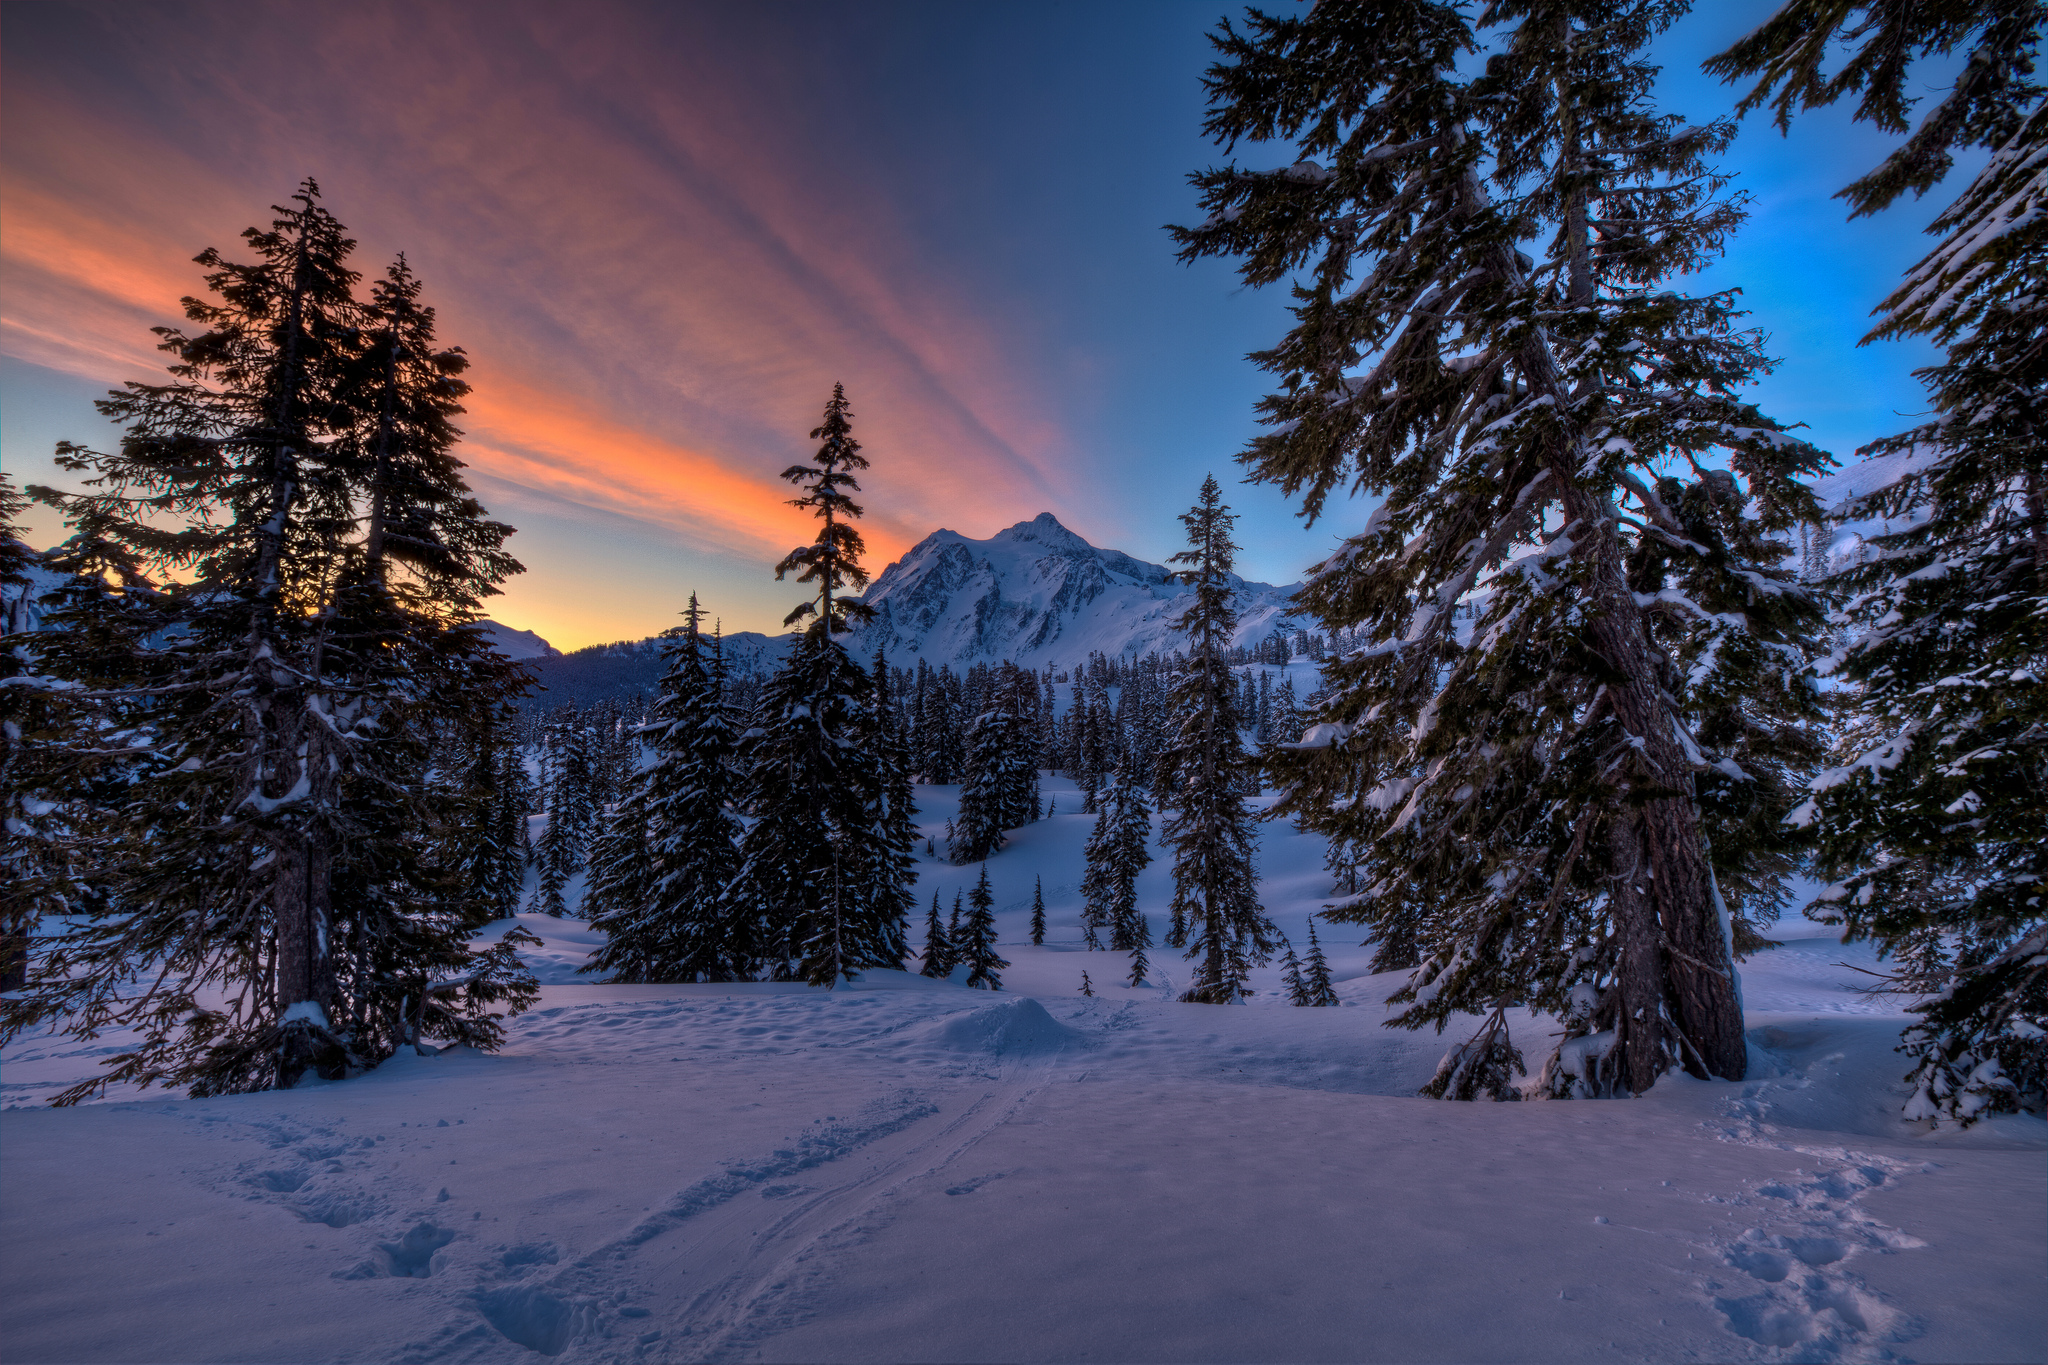 Скачать обои бесплатно Зима, Закат, Снег, Гора, Лес, Дерево, Земля/природа картинка на рабочий стол ПК